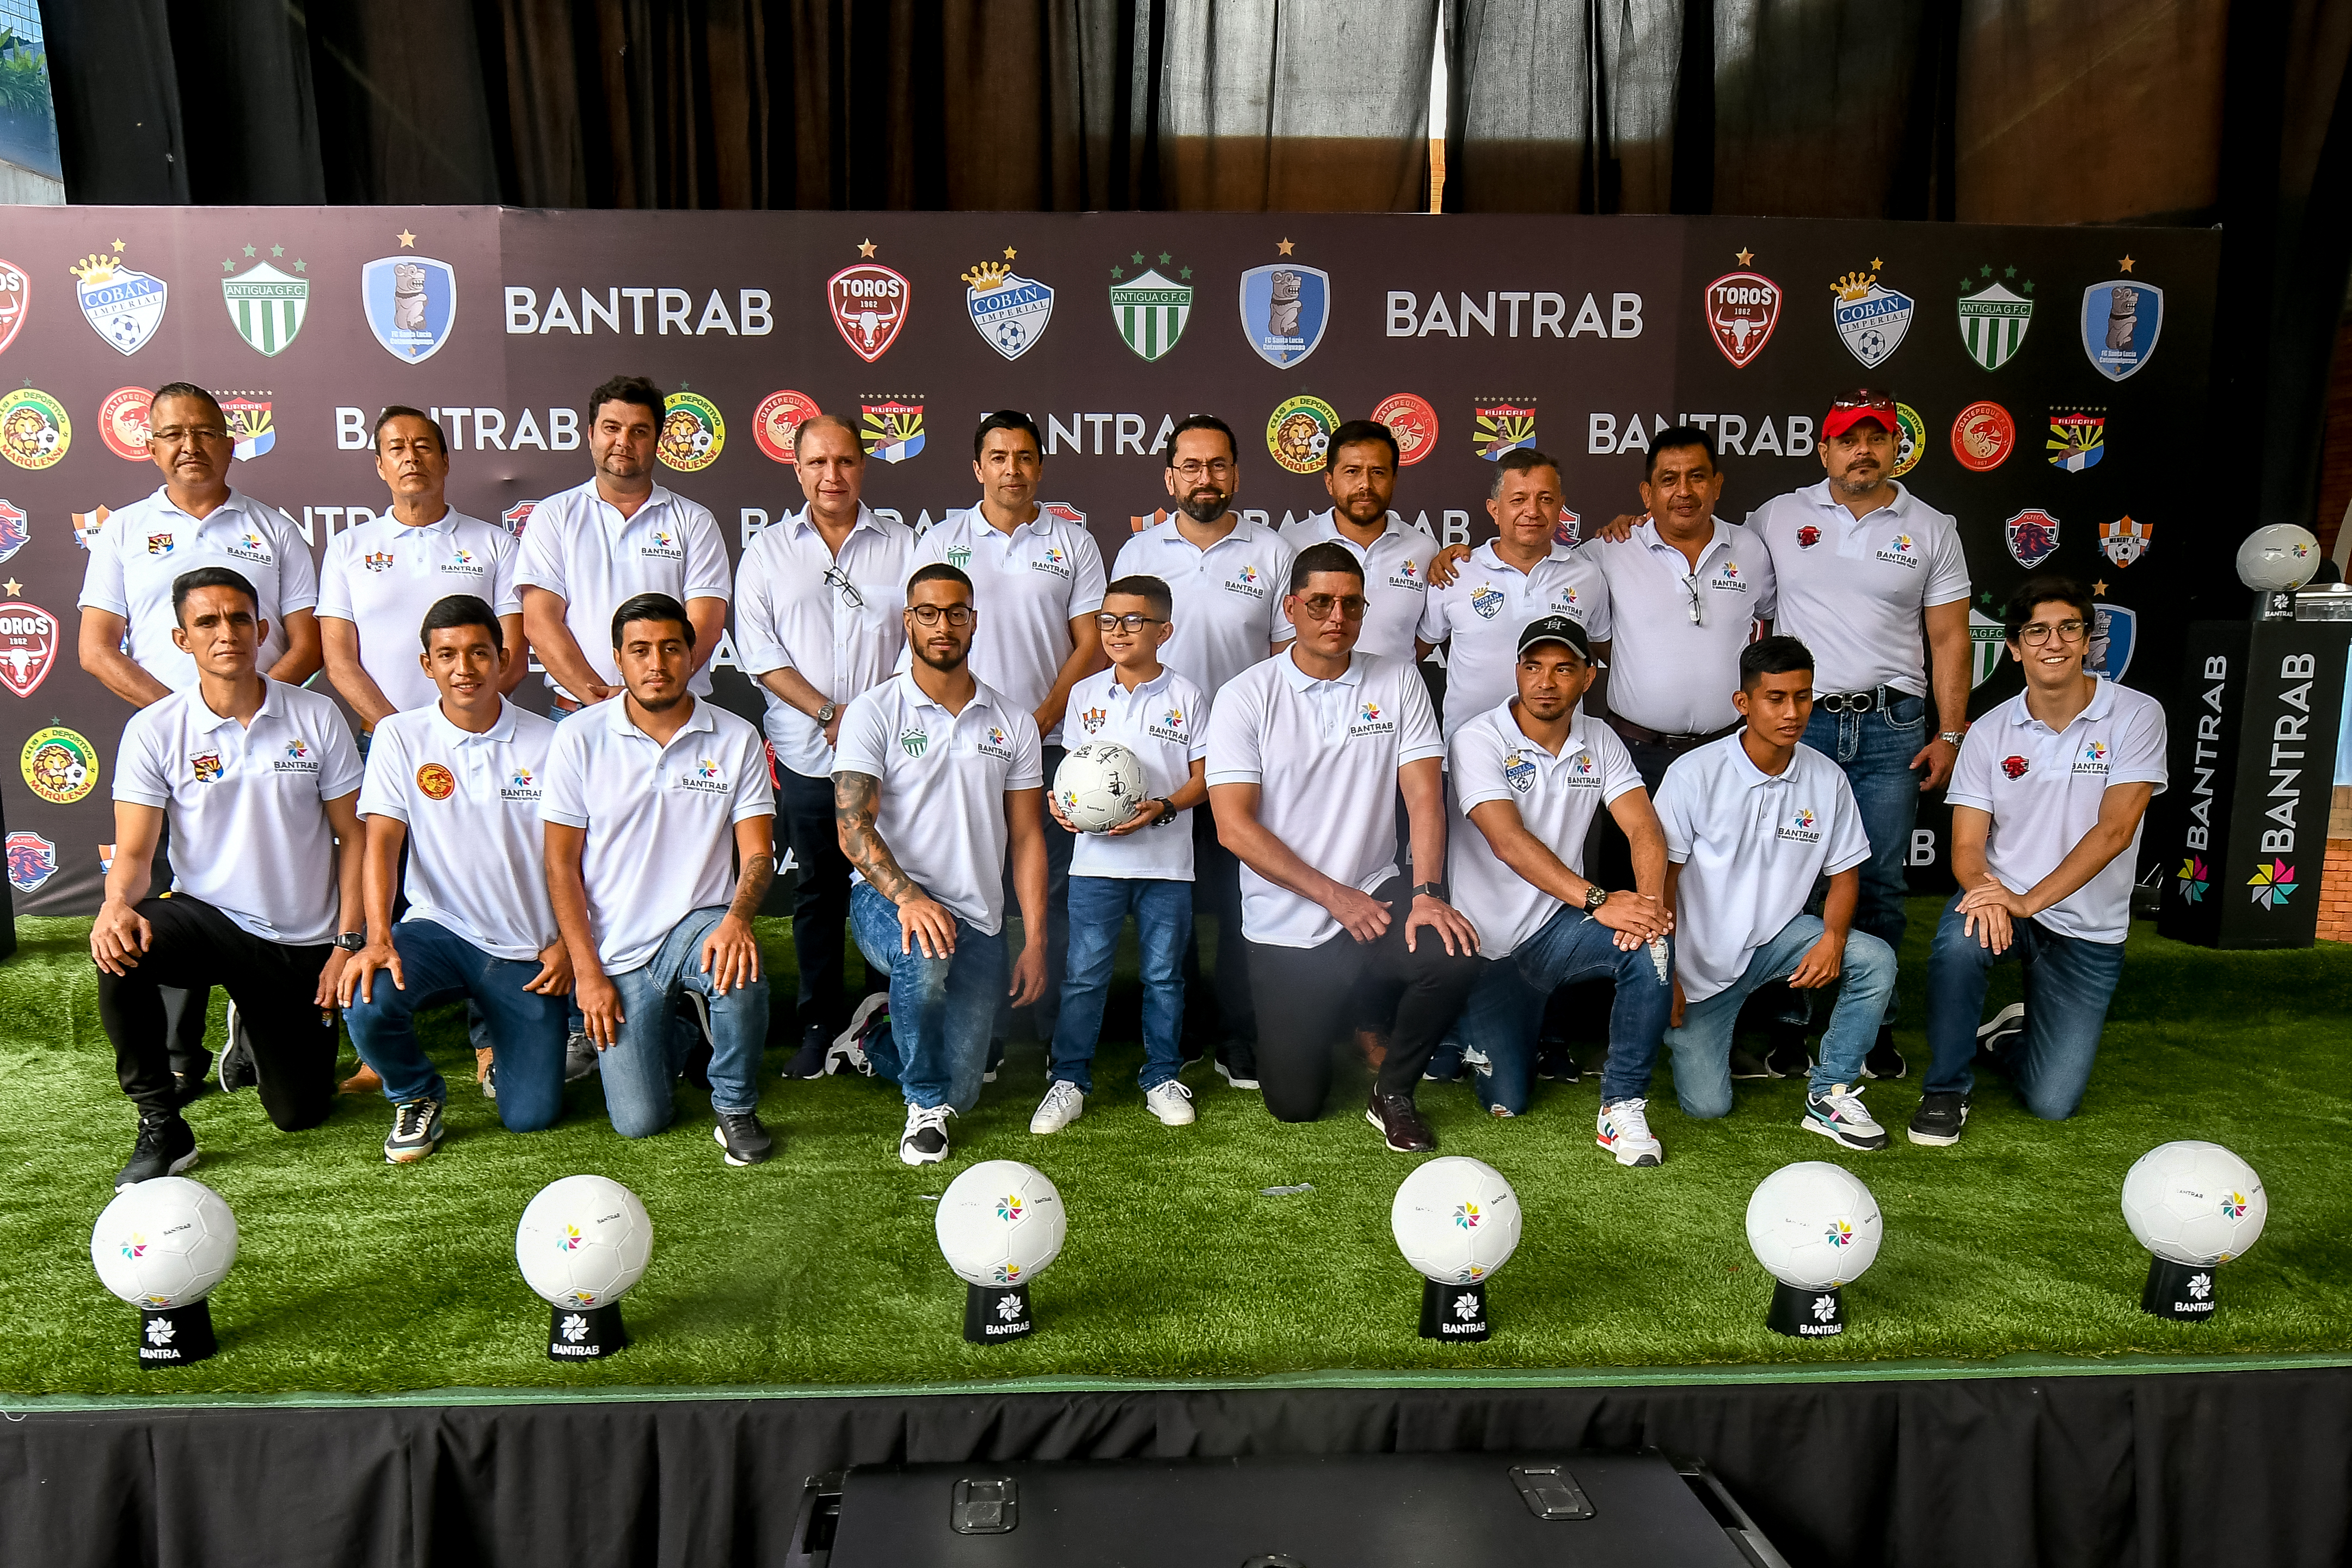 Los nueve clubes de futbol tendrán el patrocinio de Bantrab durante la temporada 2022-2023 en sus diferentes categorías. Foto Prensa Libre: Sergio Muñoz